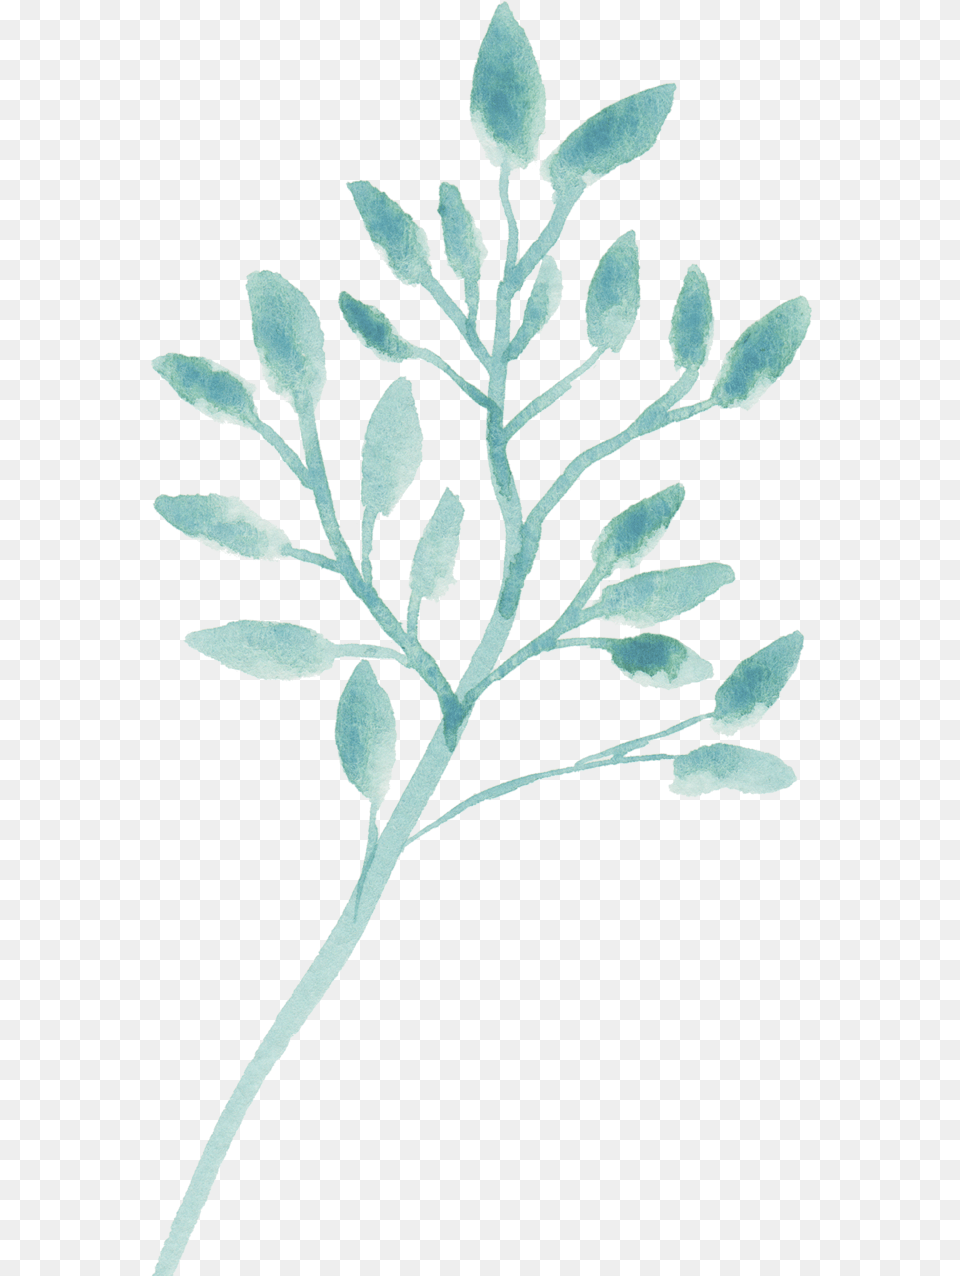 Clip Art, Leaf, Plant, Grass, Flower Png Image